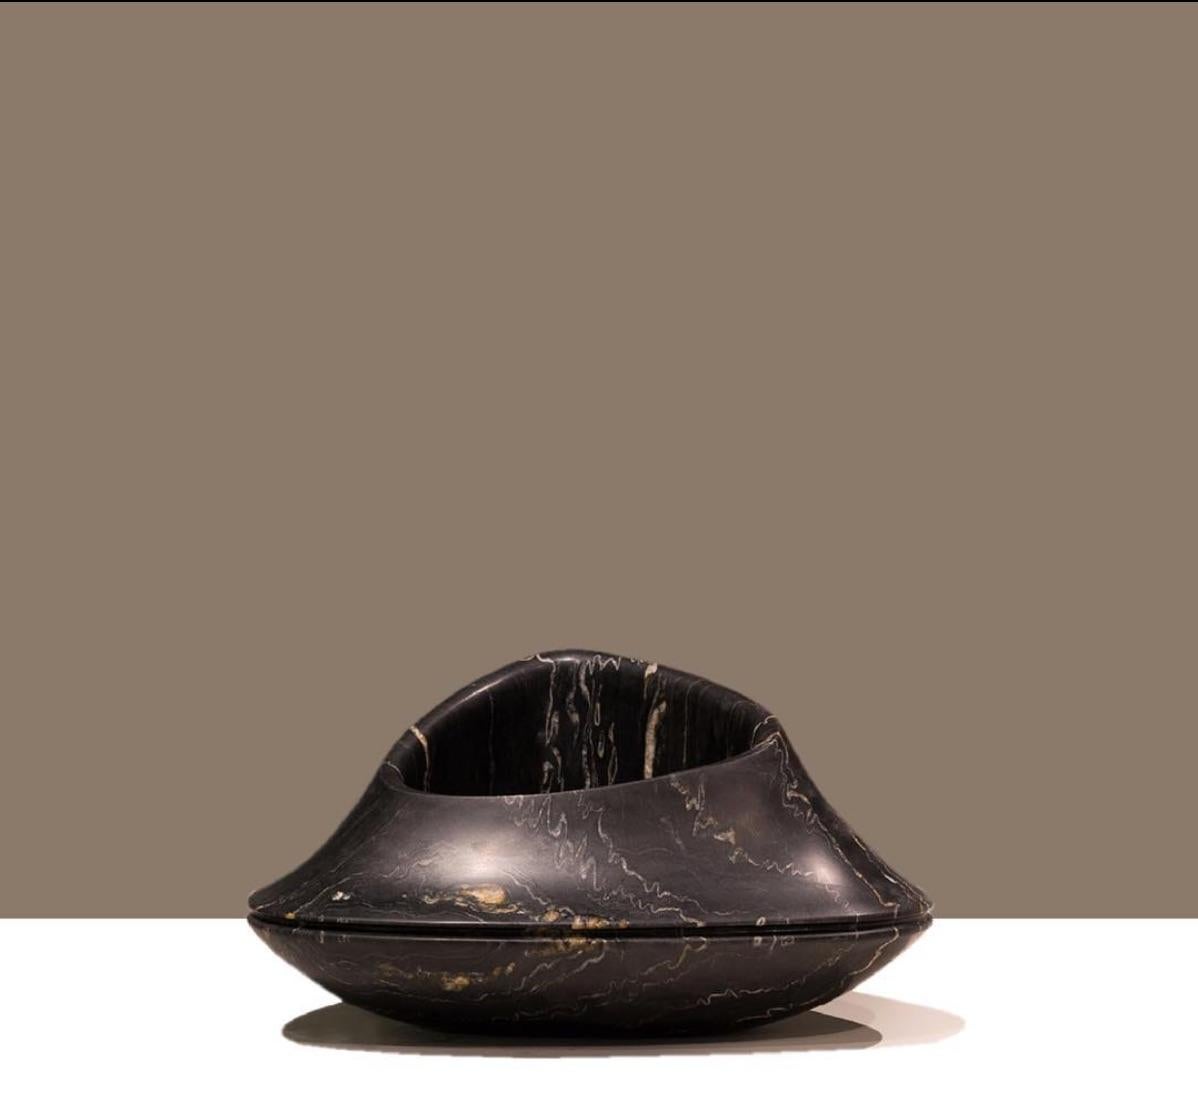 Diese Vase in limitierter Auflage wurde von Ora Ito in Zusammenarbeit mit unseren Partnern in Italien aus schwarzem, geädertem Marmor mit tropischen Gewittern geschaffen. Die rationalen, organischen Formen erzeugen einen skulpturalen Eindruck, der